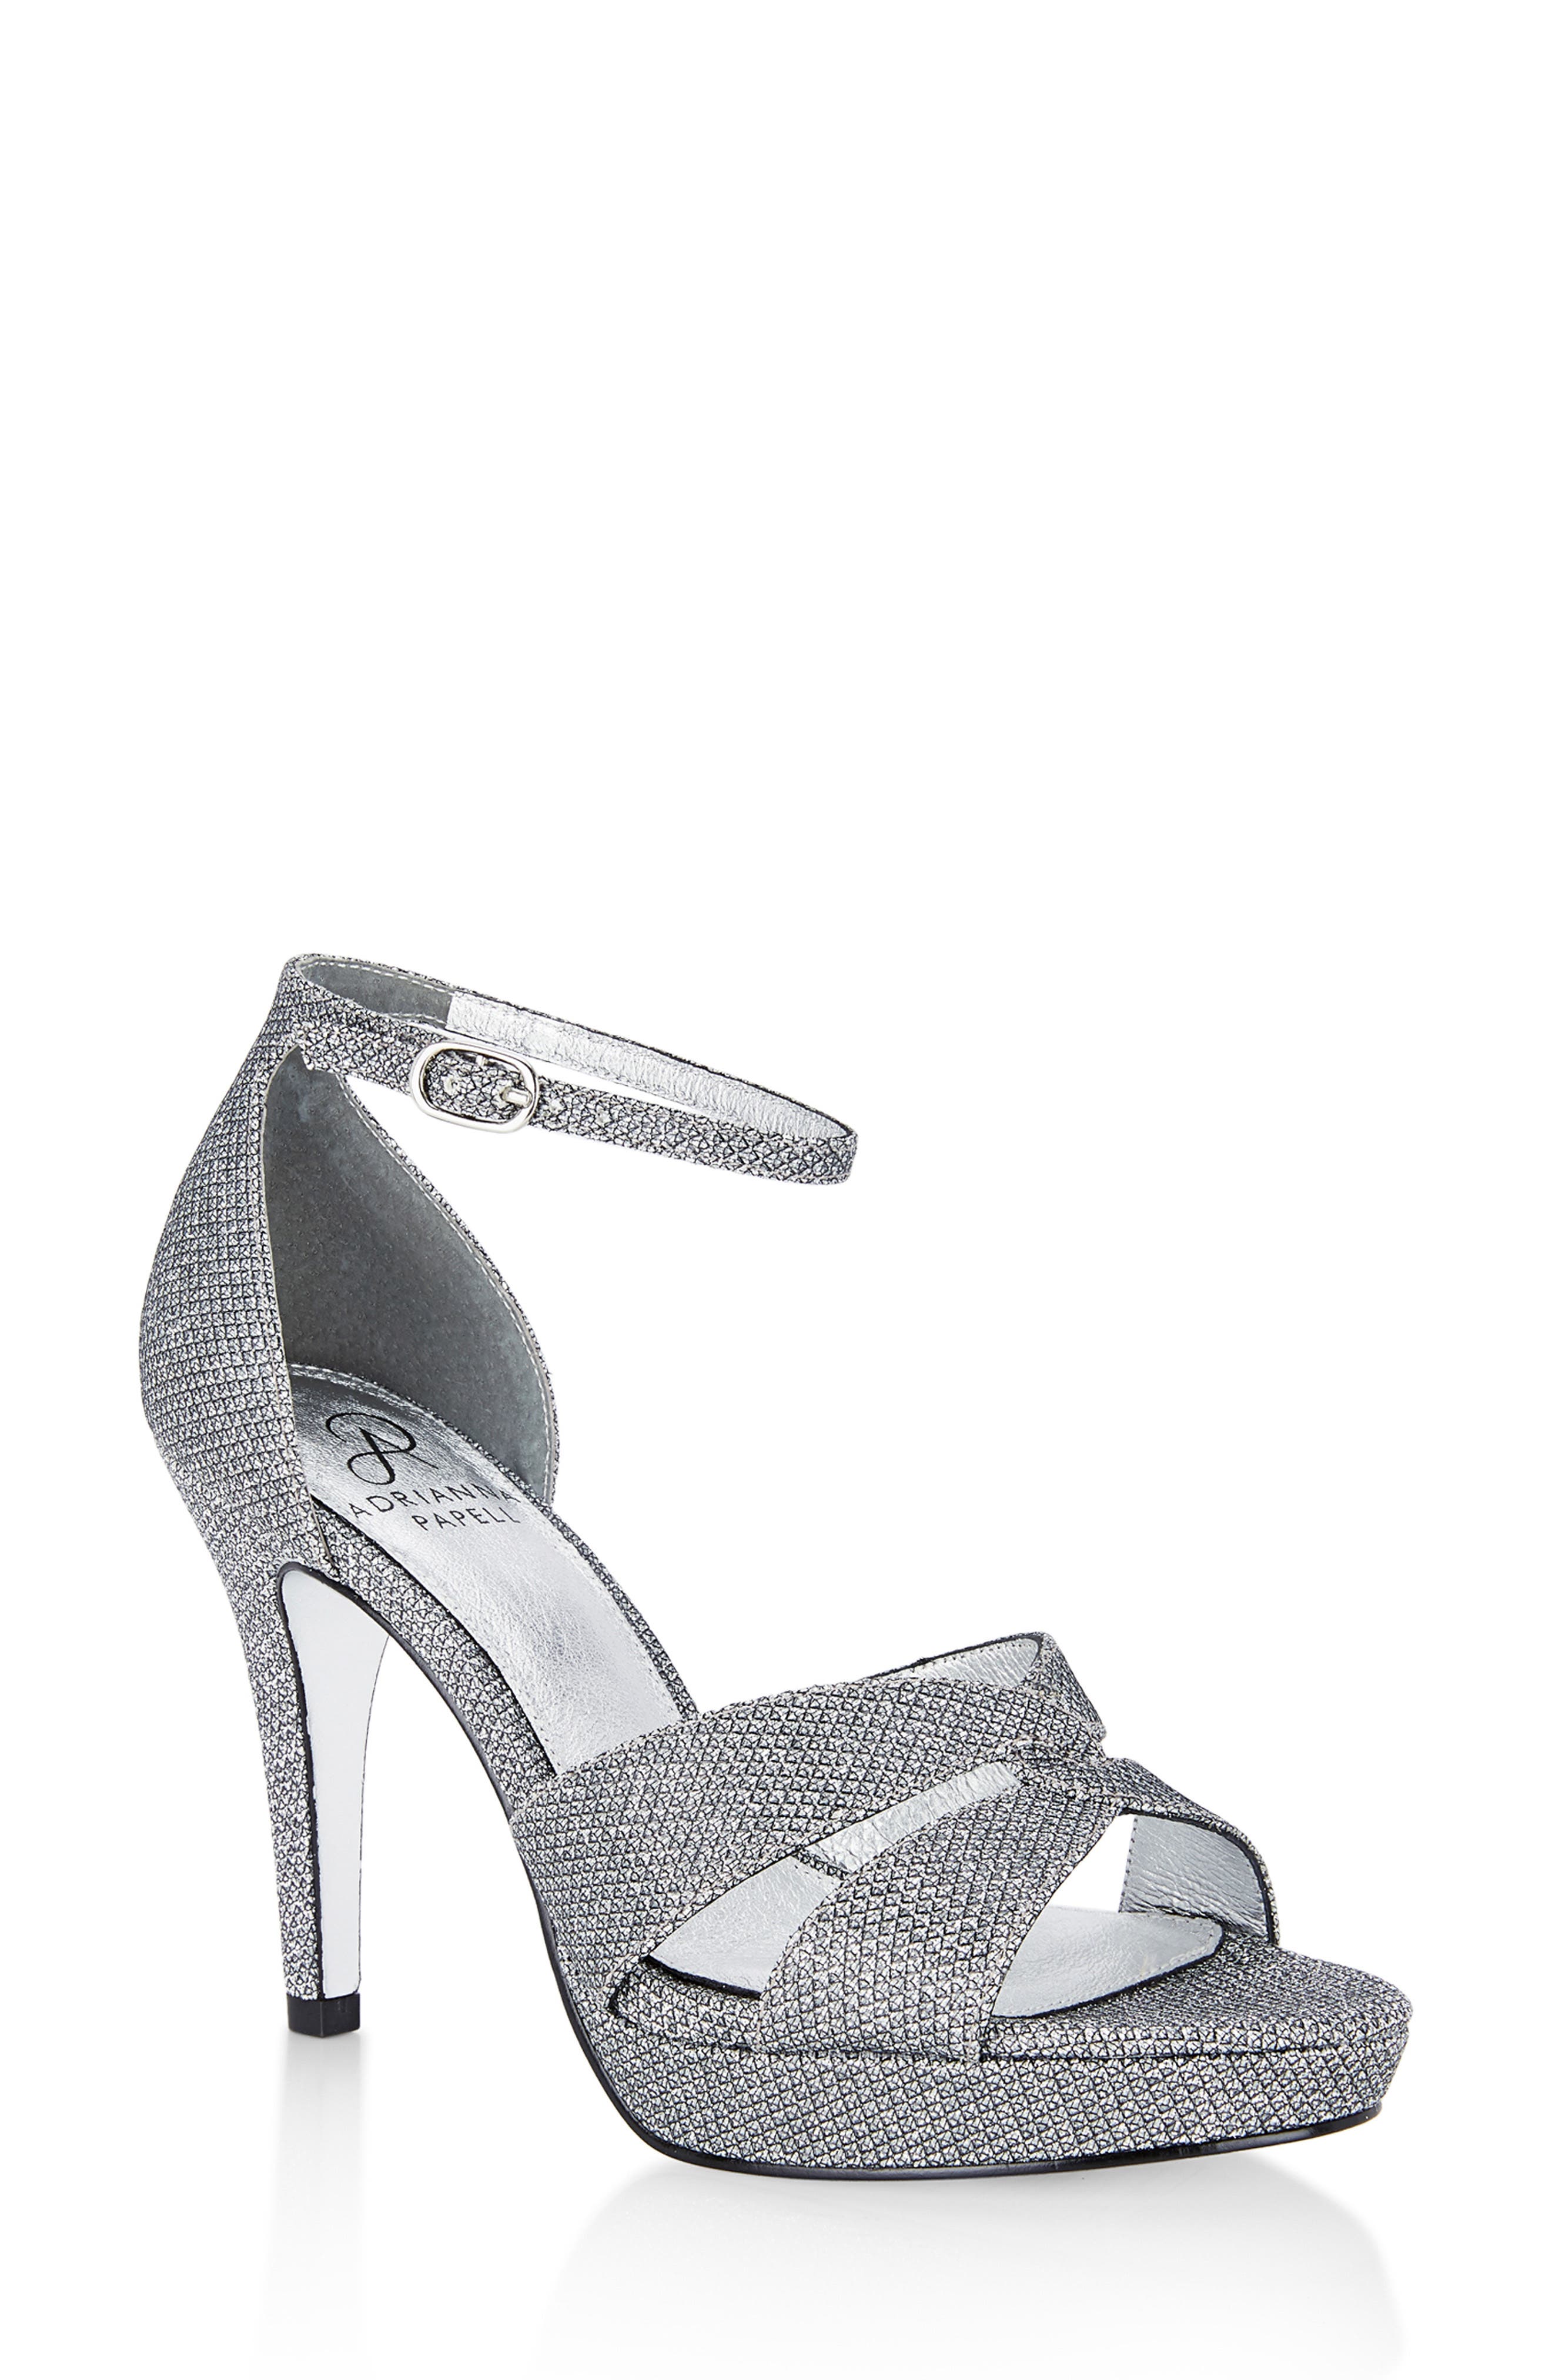 gunmetal silver shoes